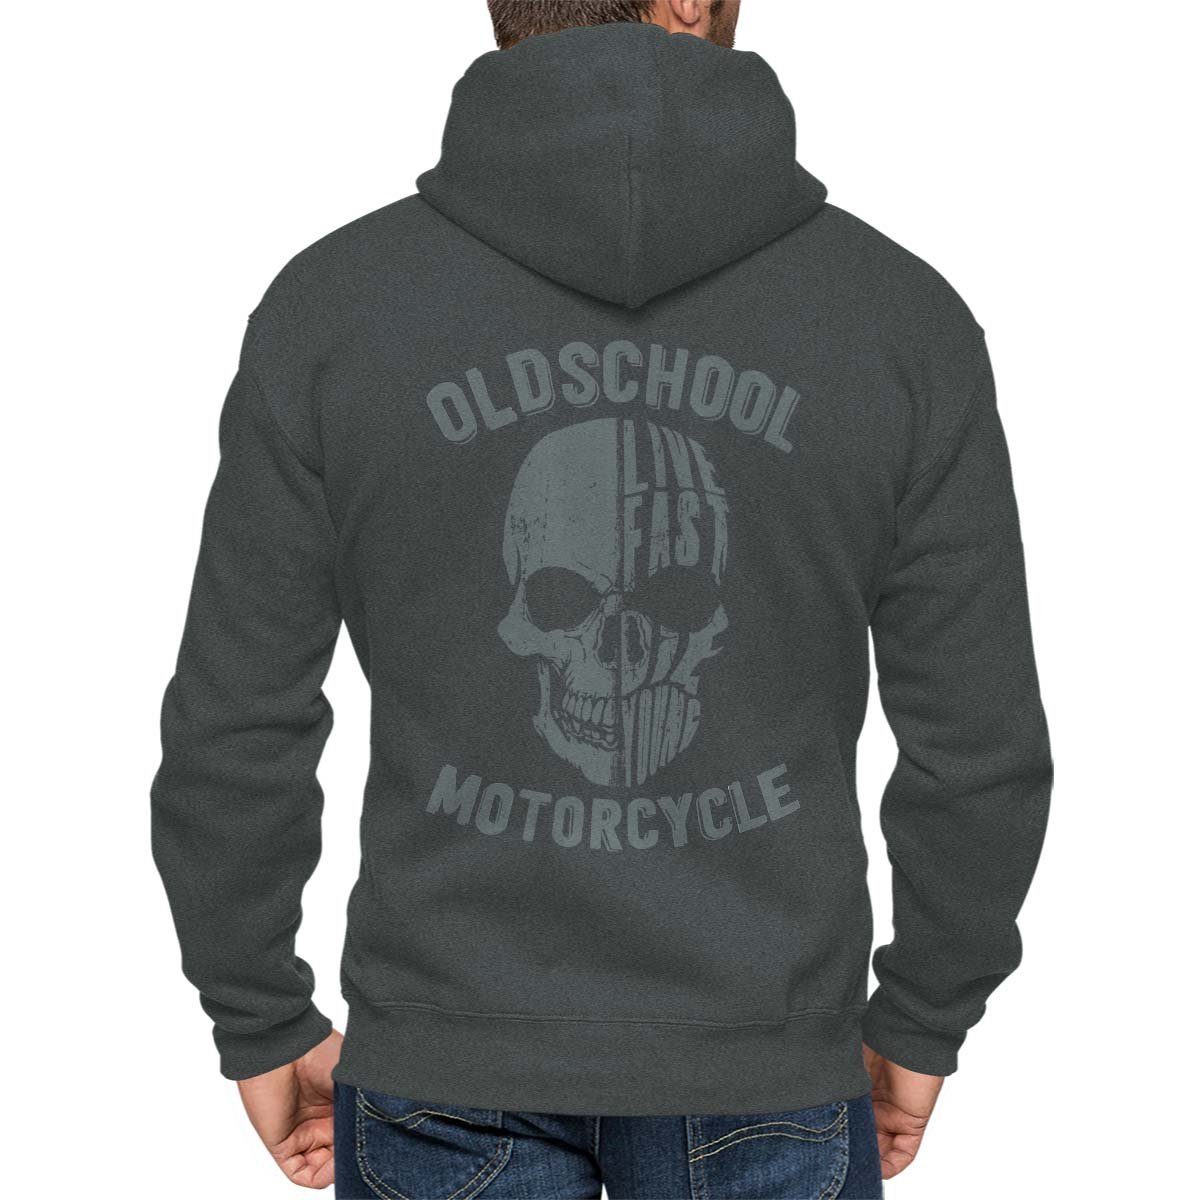 Motiv Zip / Kapuzenjacke Kapuzensweatjacke Rebel Biker Hoodie Wheels Oldschool mit Skull Motorrad Anthra On Melange